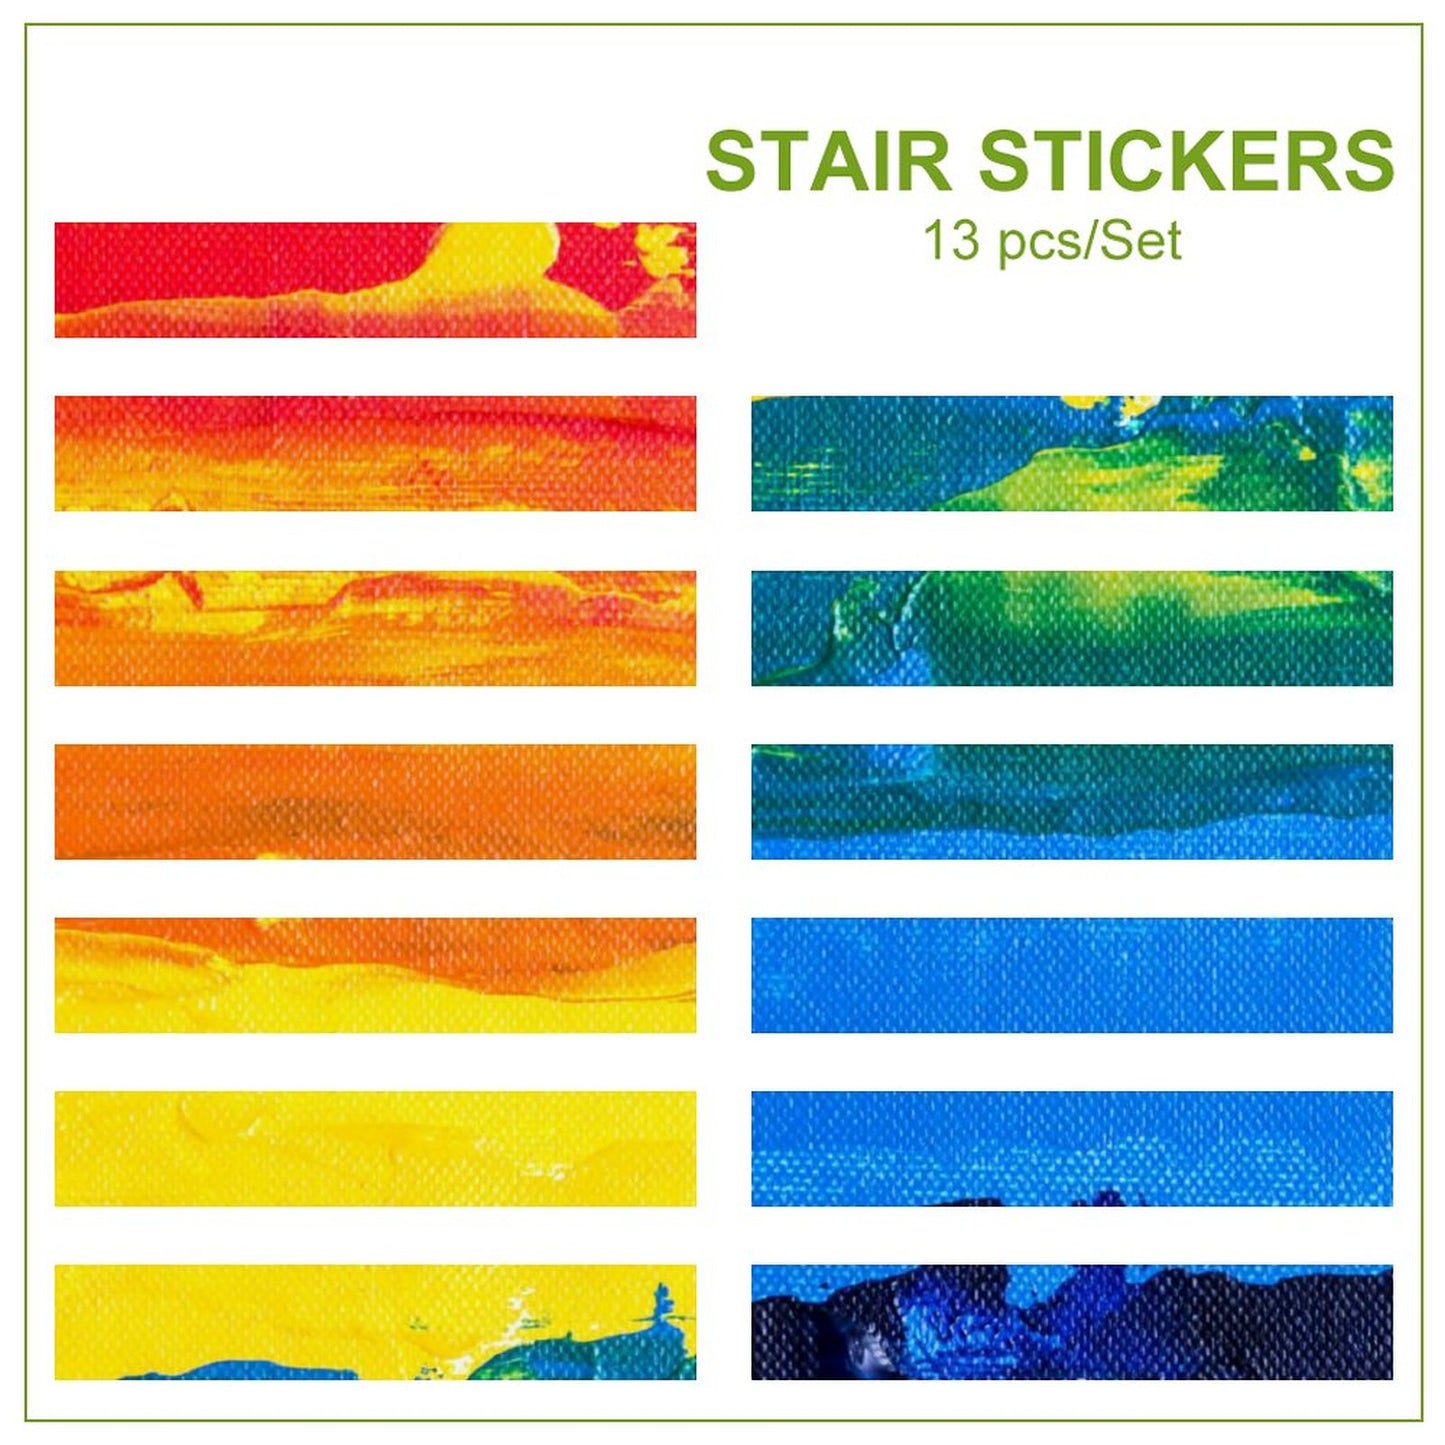 Online DIY The Stair Sticker